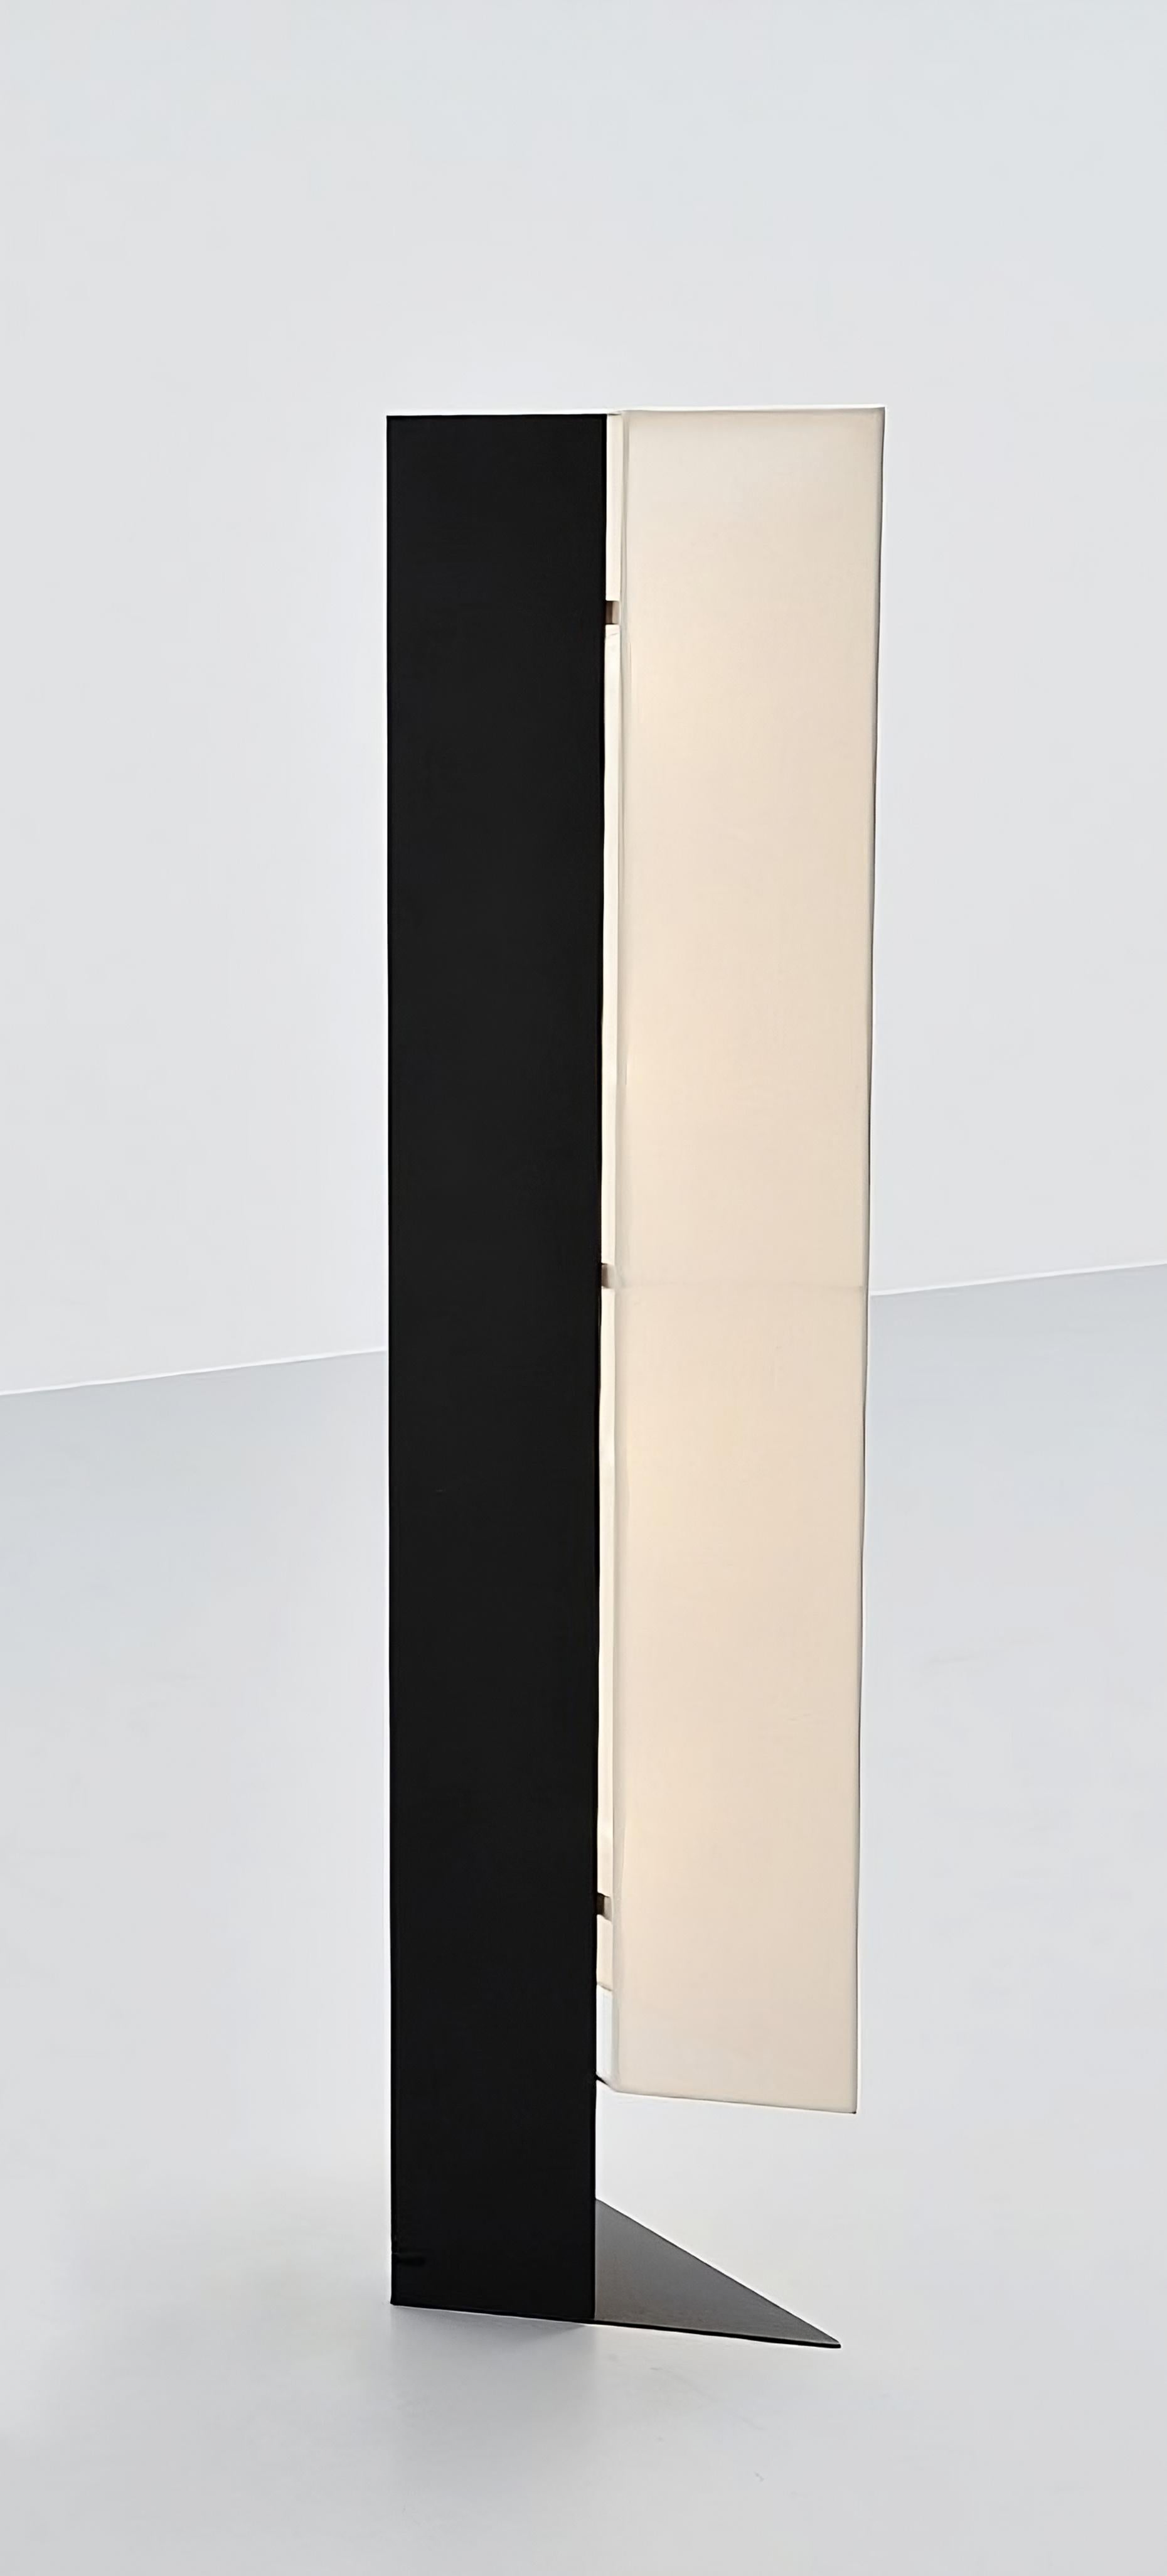 Die 1978 von Cini Boeri entworfene Leuchte Accademia ist eine Stehleuchtenversion der beliebten Tischleuchte, die für Artemide entworfen wurde. Diese Leuchte ist ein eindrucksvolles Beispiel für den minimalistischen Designansatz von Boeri, dessen